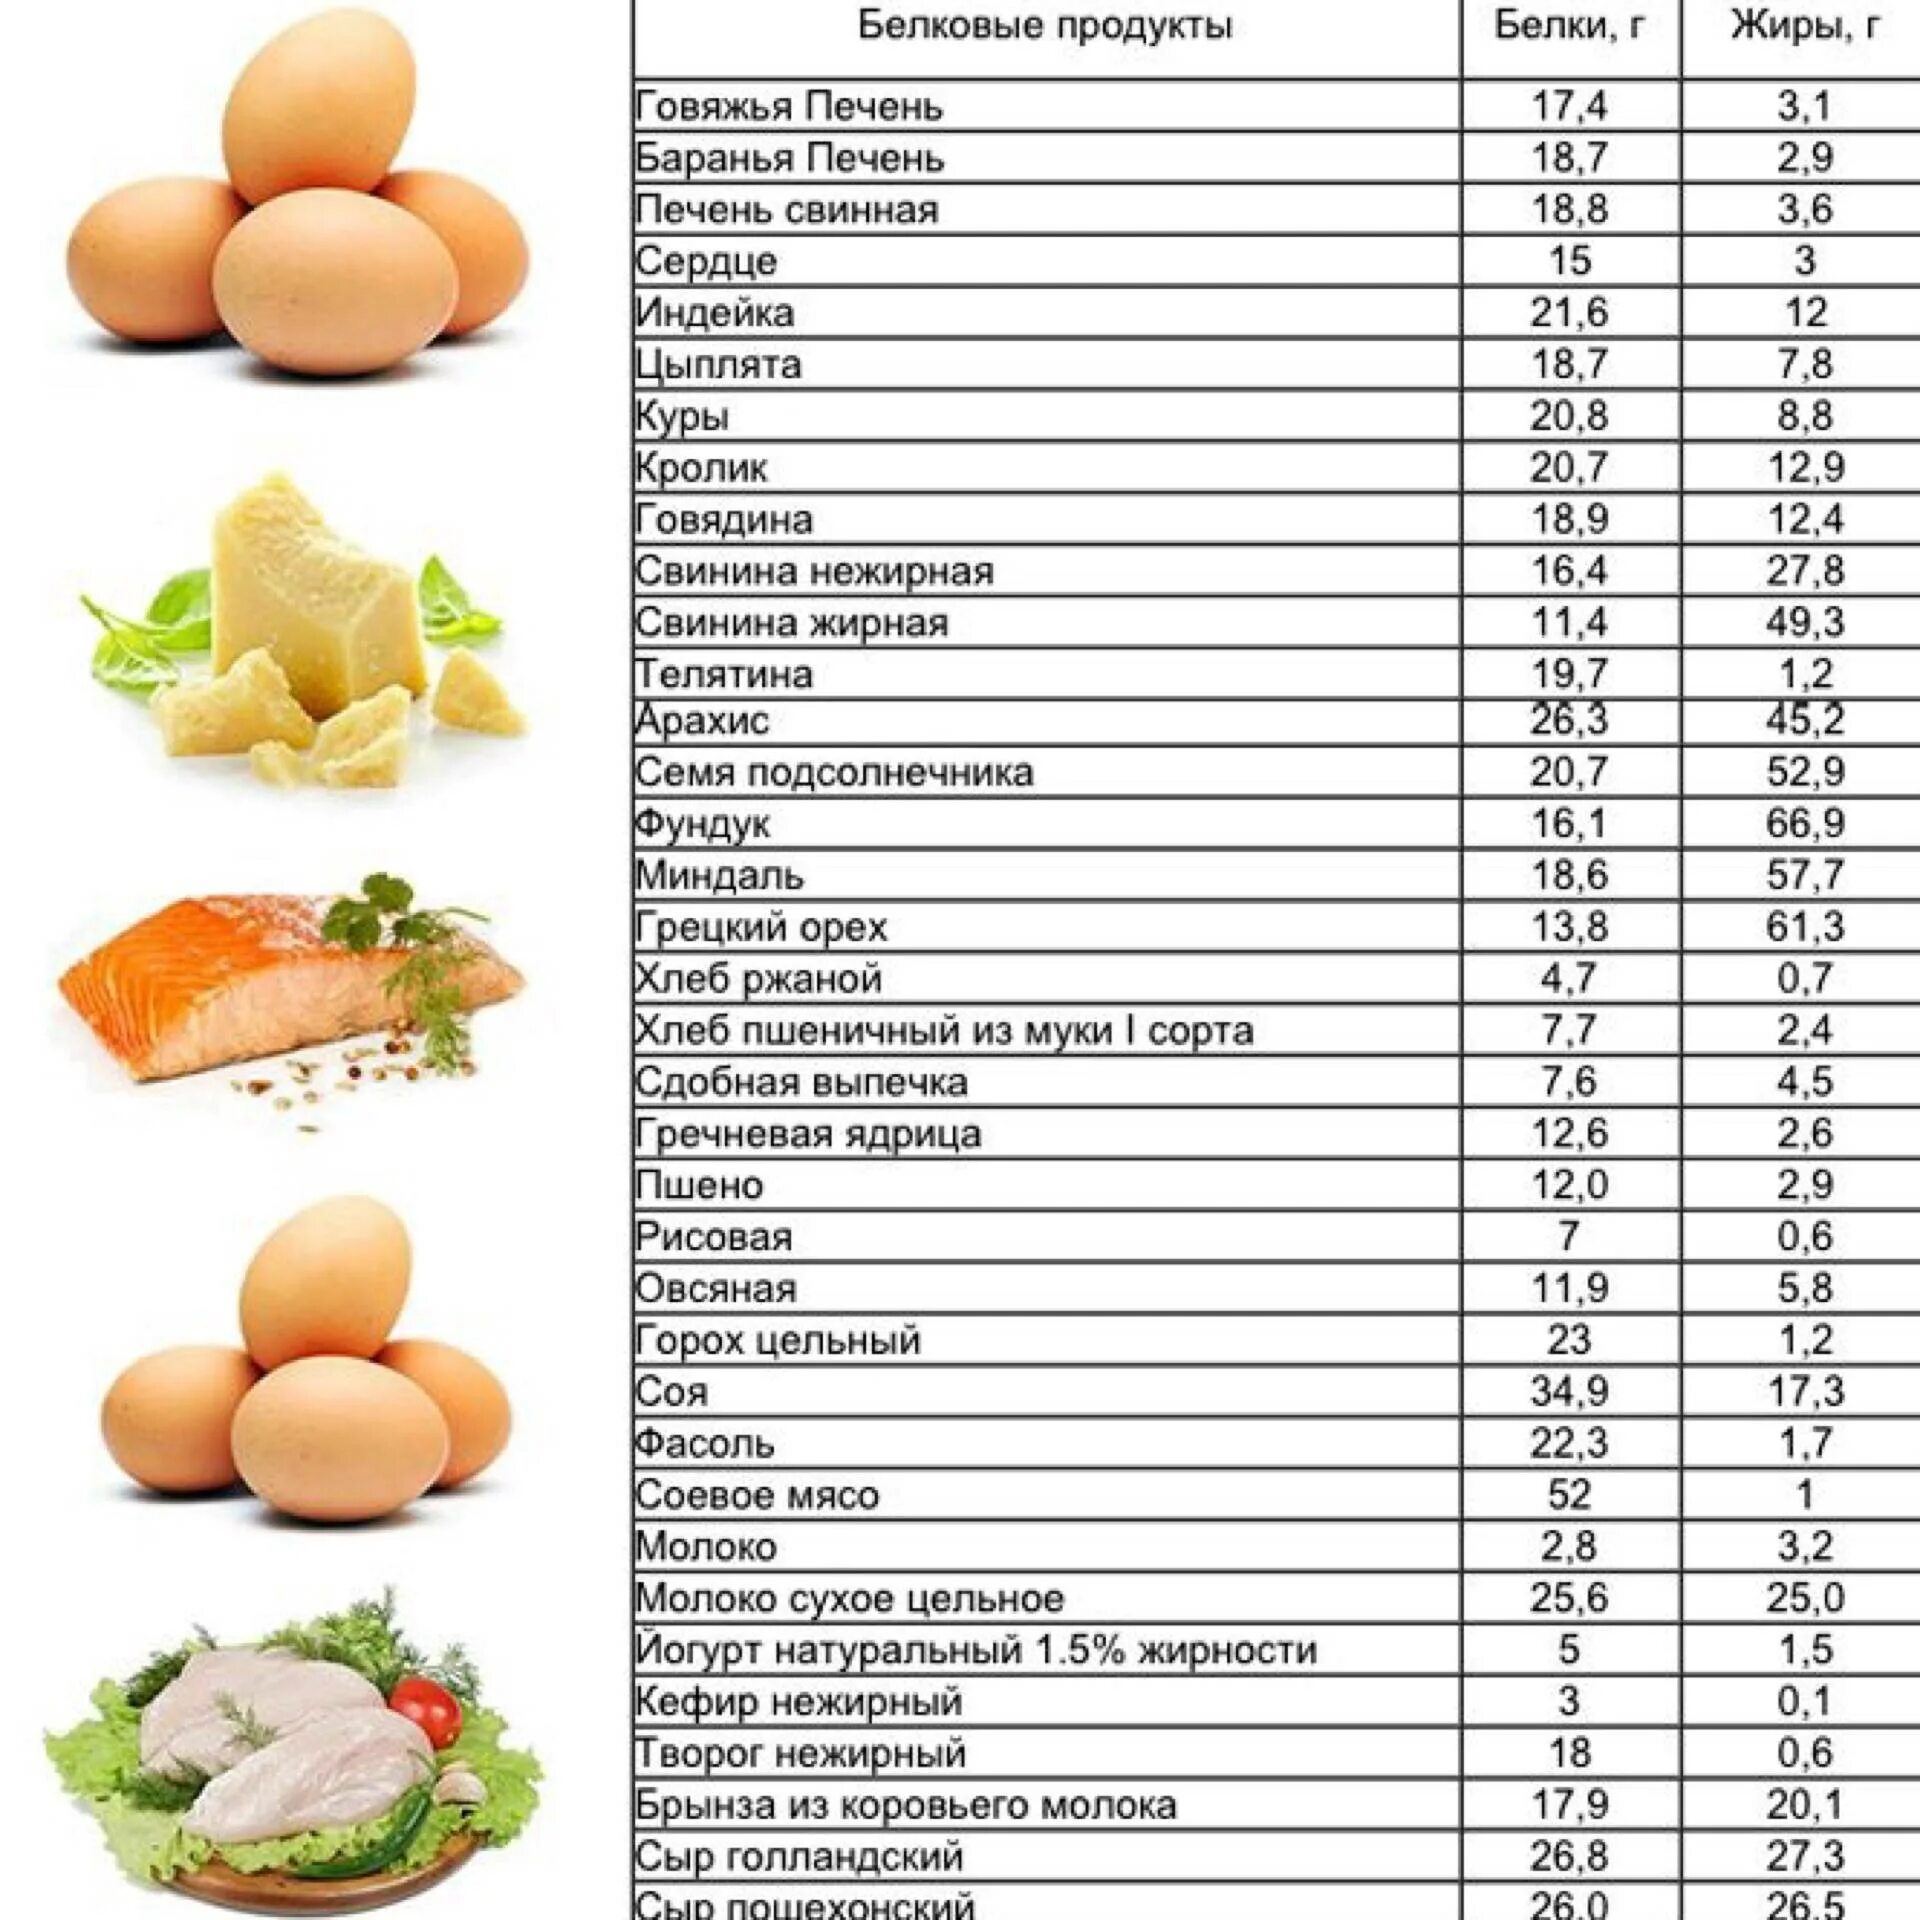 Продукты содержащие белок для похудения таблица список продуктов. Продукты богатые белком для похудения таблица список. Продукты богатые белком для похудения таблица список и блюда. Продукты богатые белком список продуктов таблица.